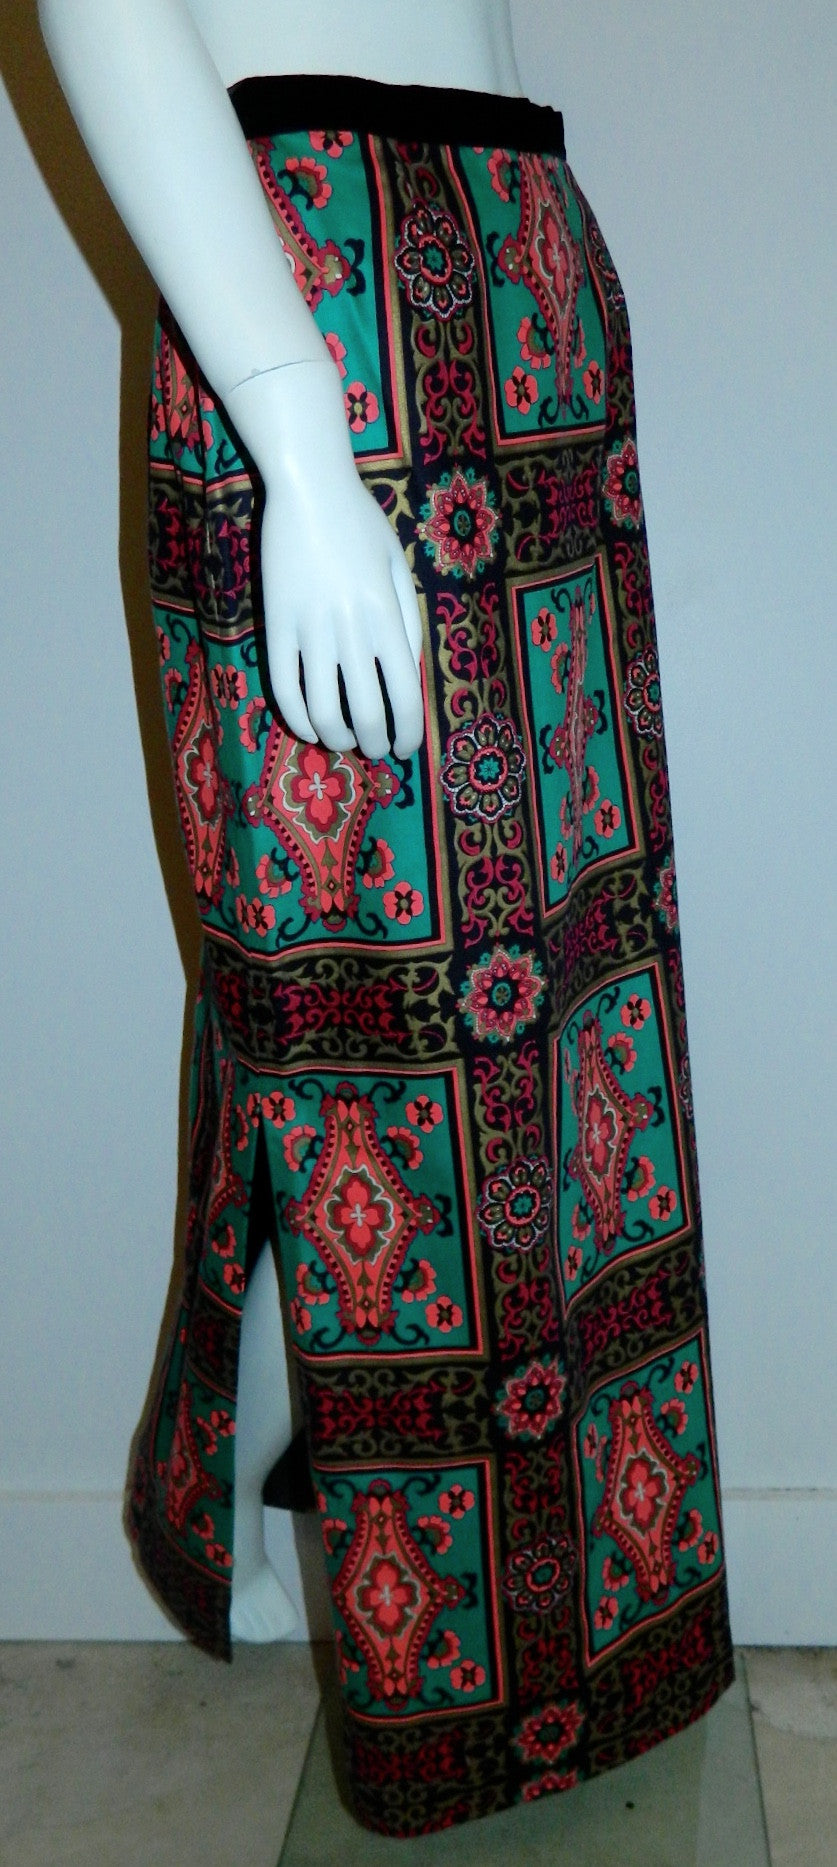 vintage Alex Coleman skirt / teal pink baroque frame print / wool side slit column skirt 1970s